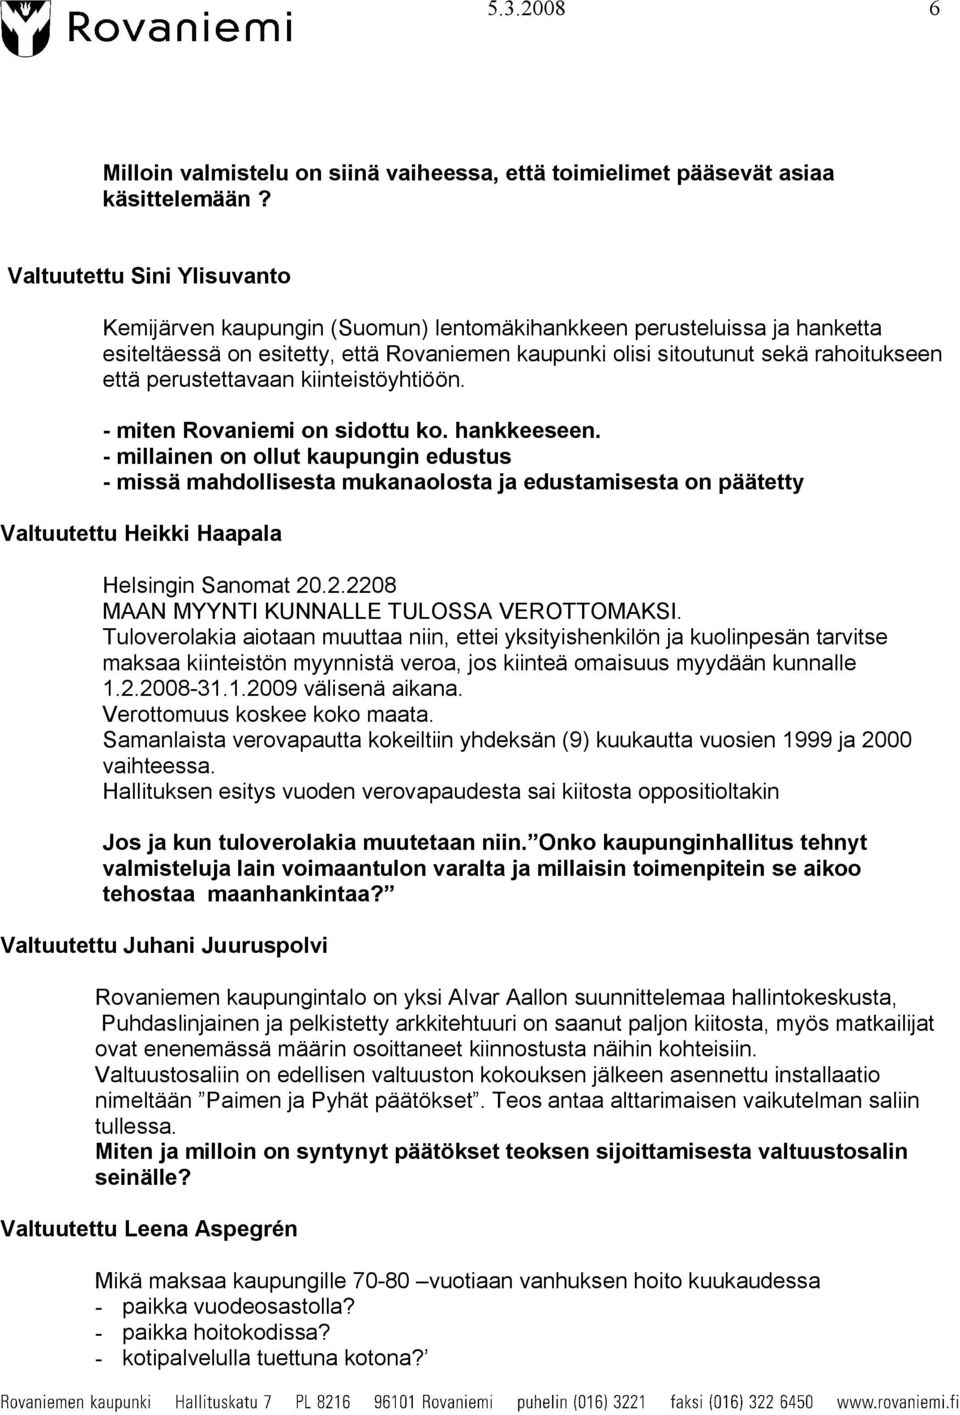 perustettavaan kiinteistöyhtiöön. miten Rovaniemi on sidottu ko. hankkeeseen.